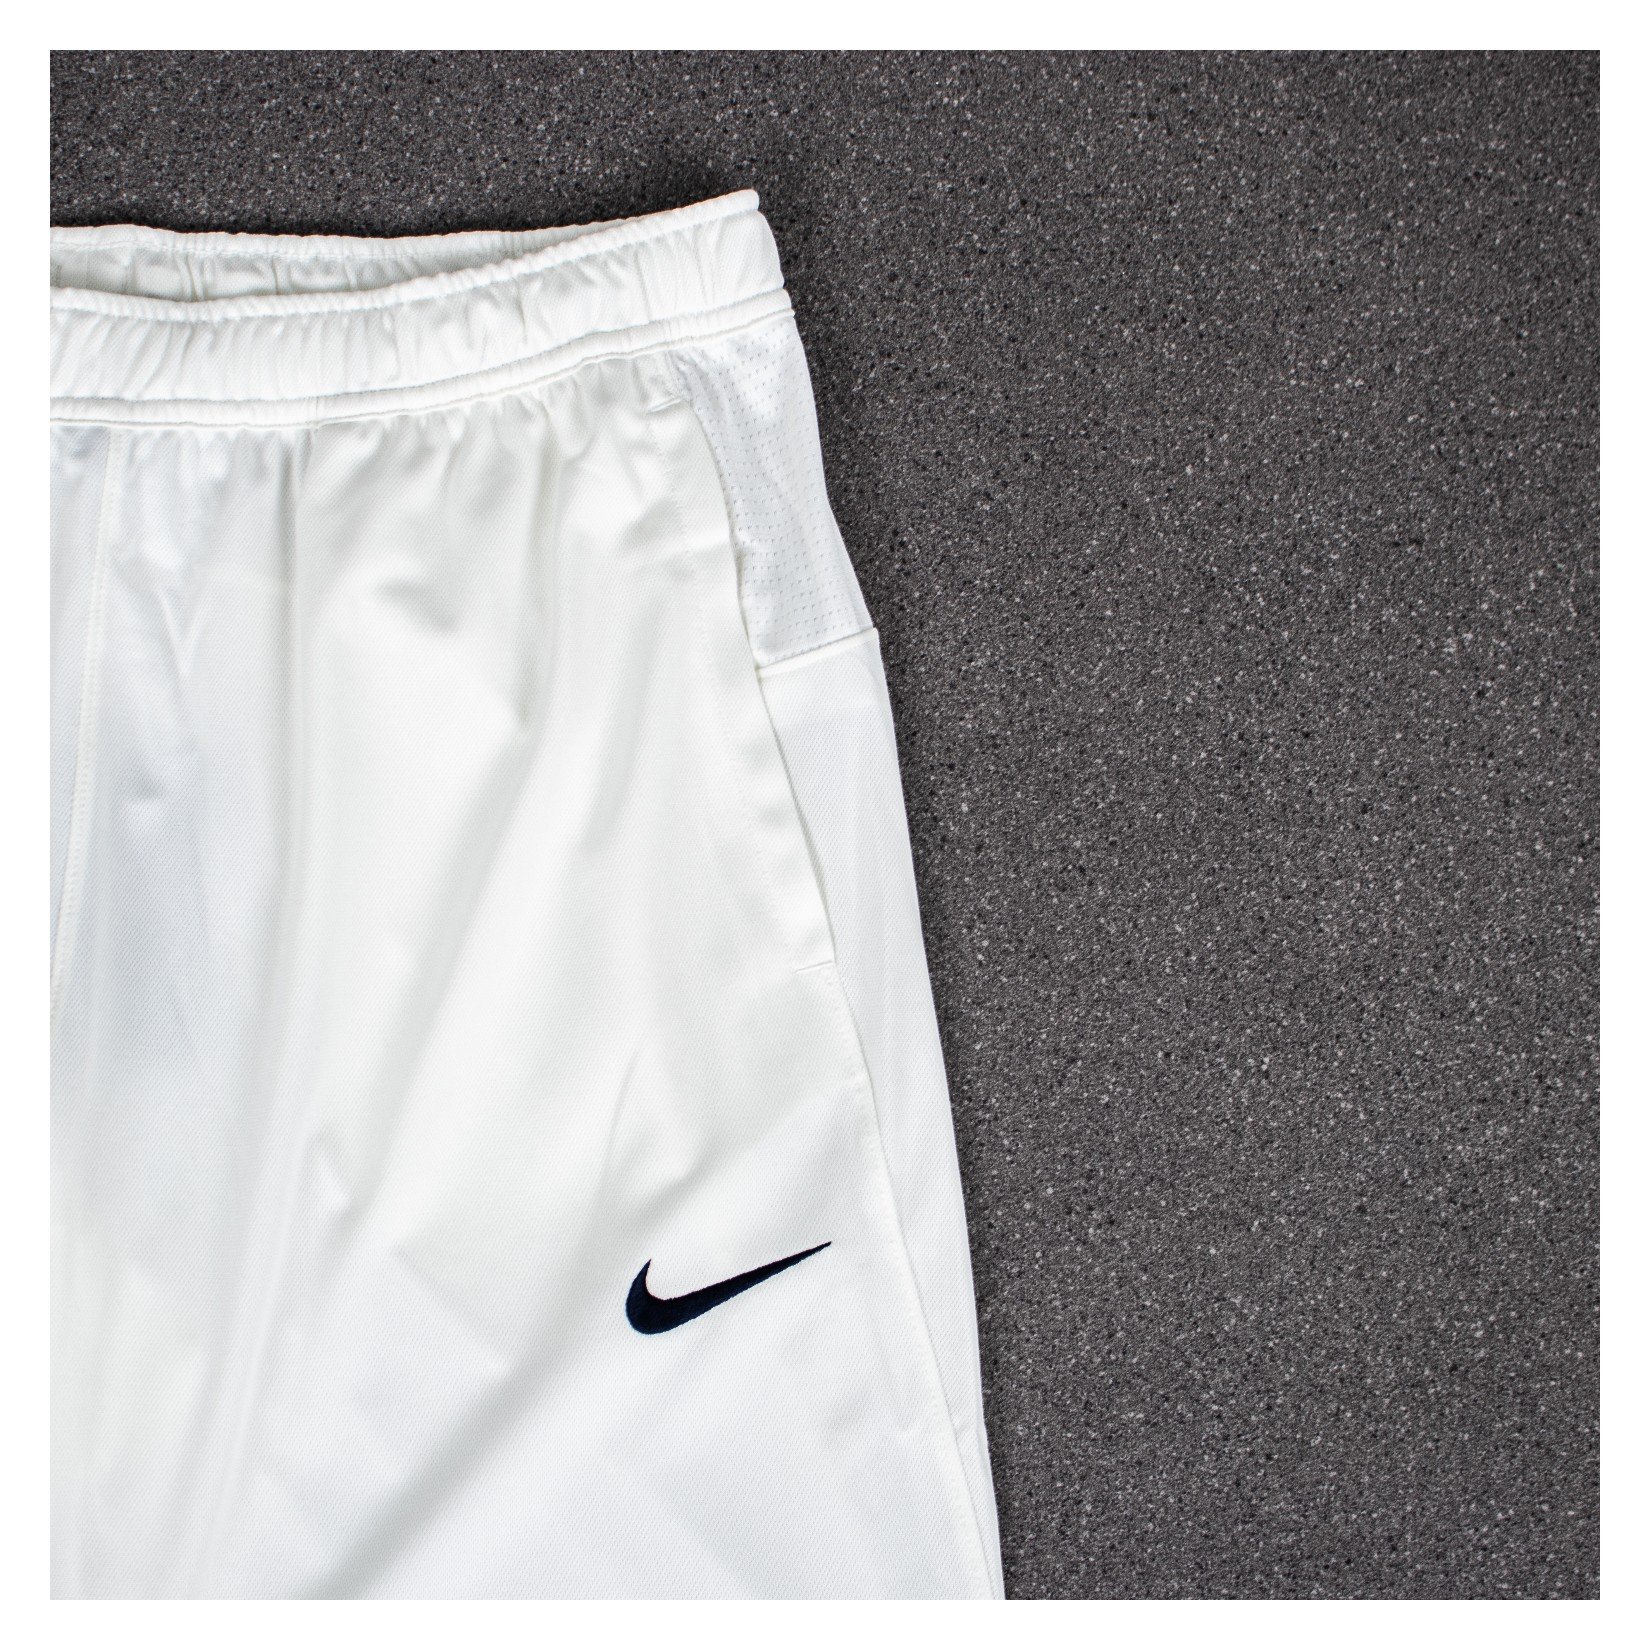 Nike Cricket Clothing